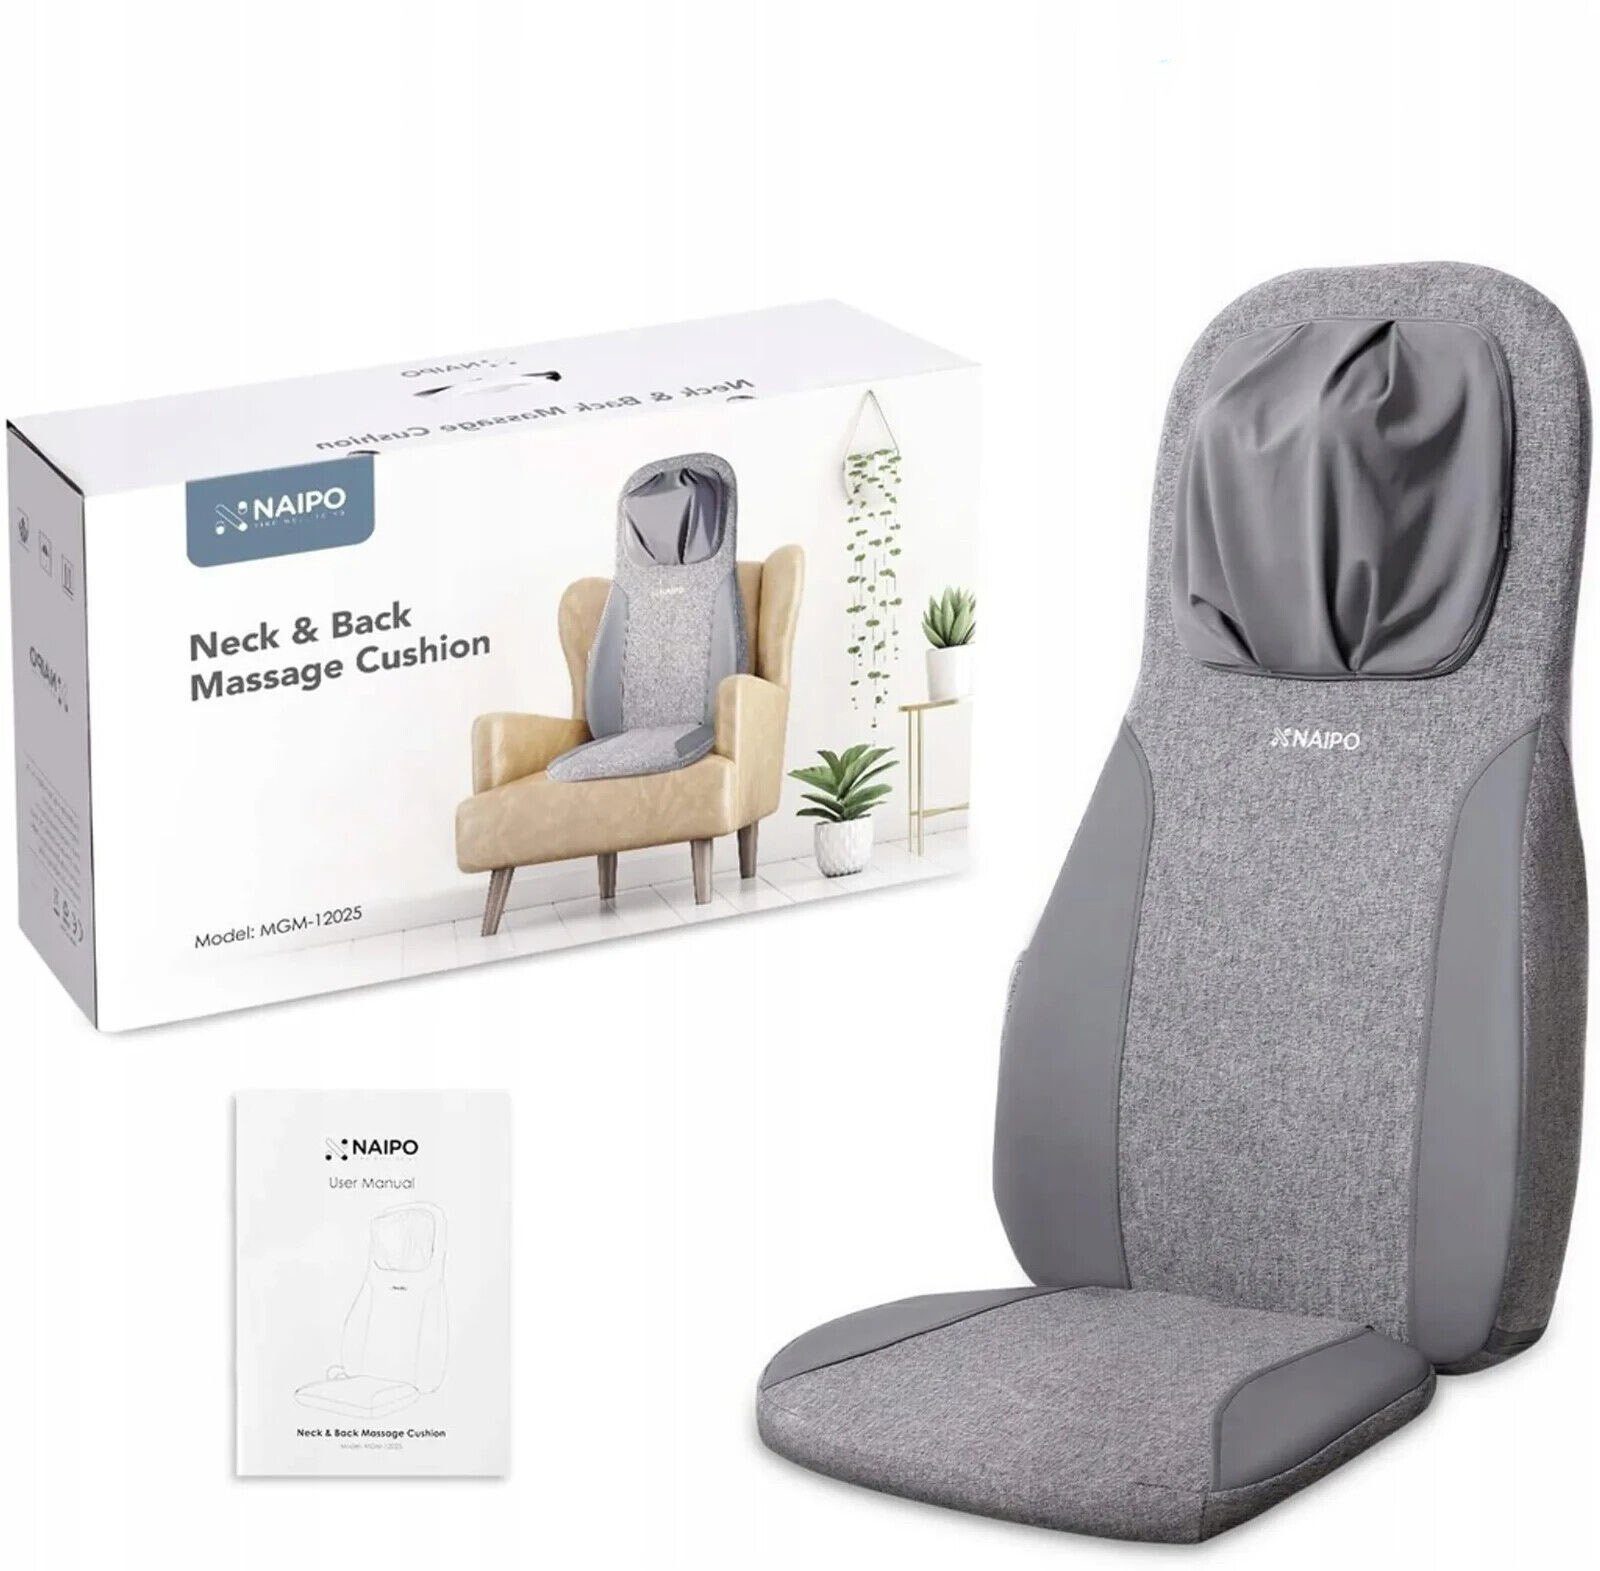 Das perfekte Männergeschenk: Massage-Sitzauflage